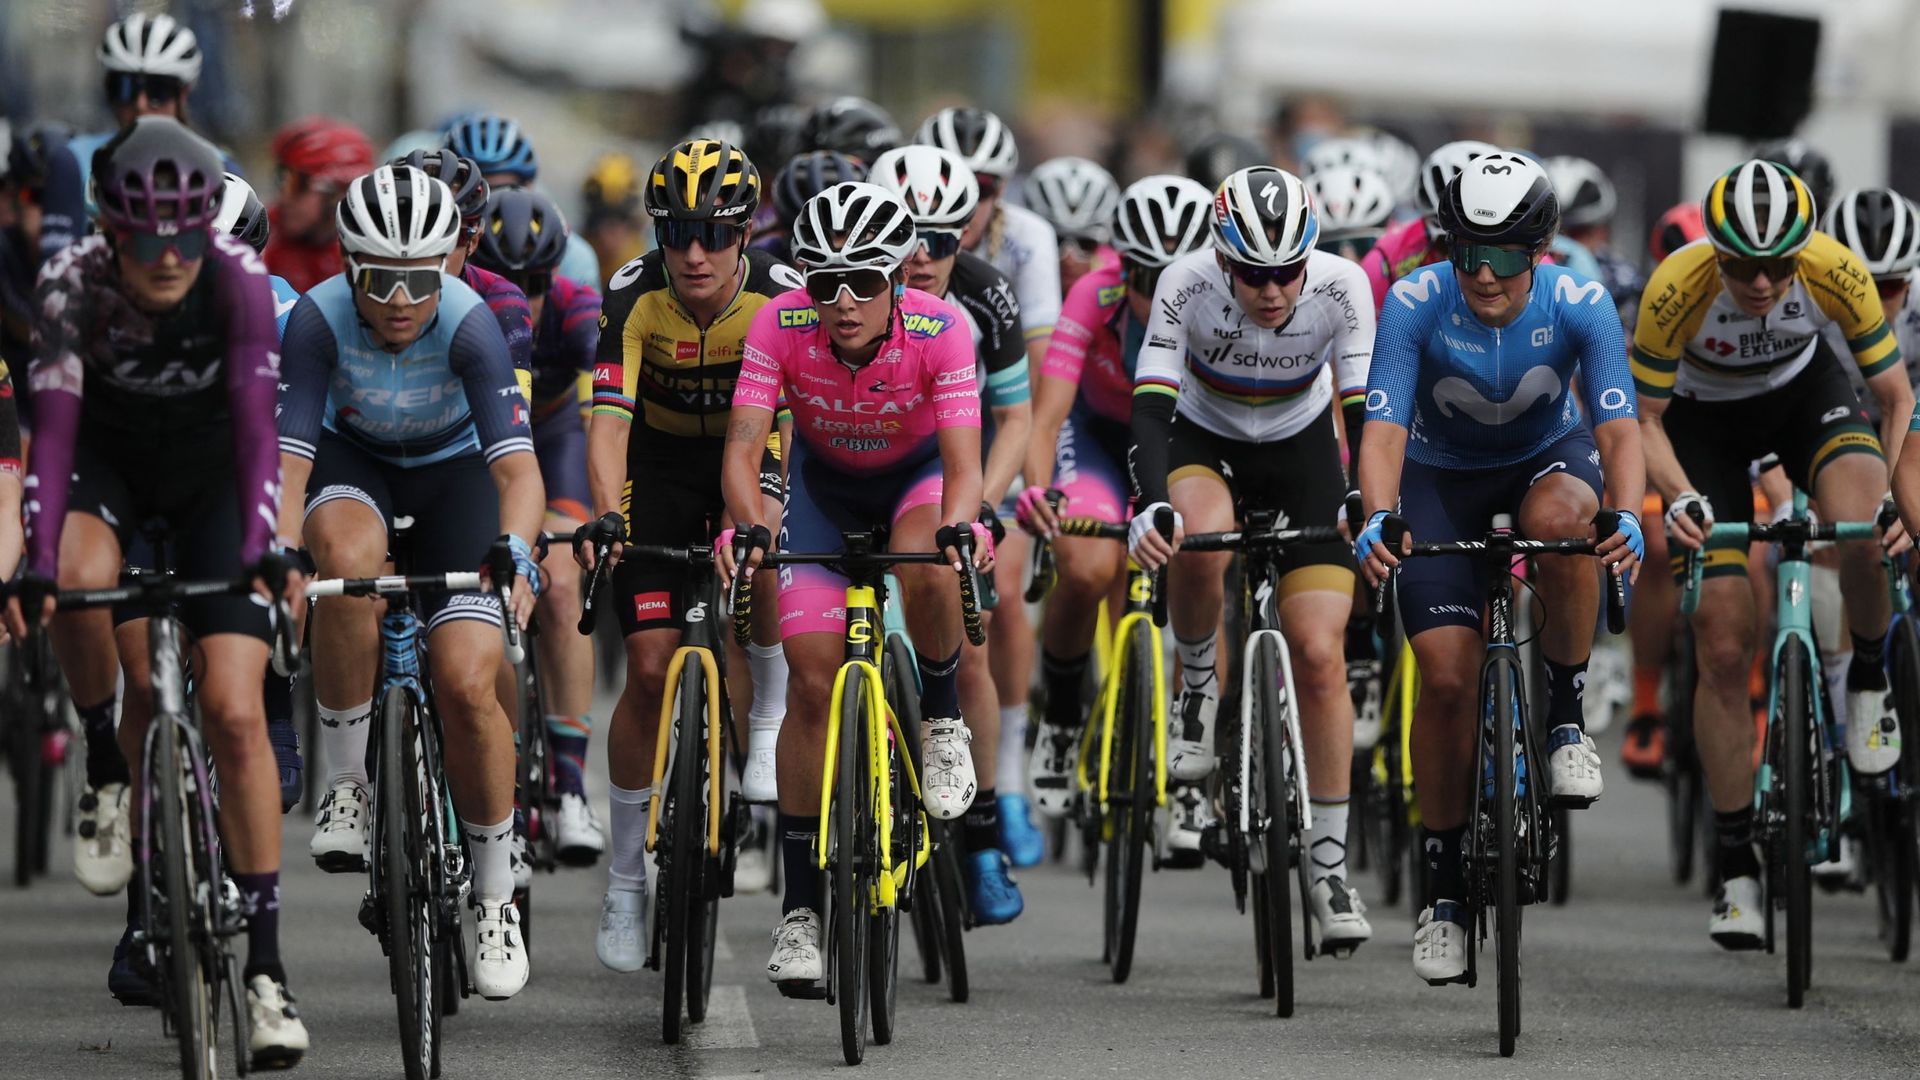 Cyclisme, Tour de France féminin : Image d'illustration